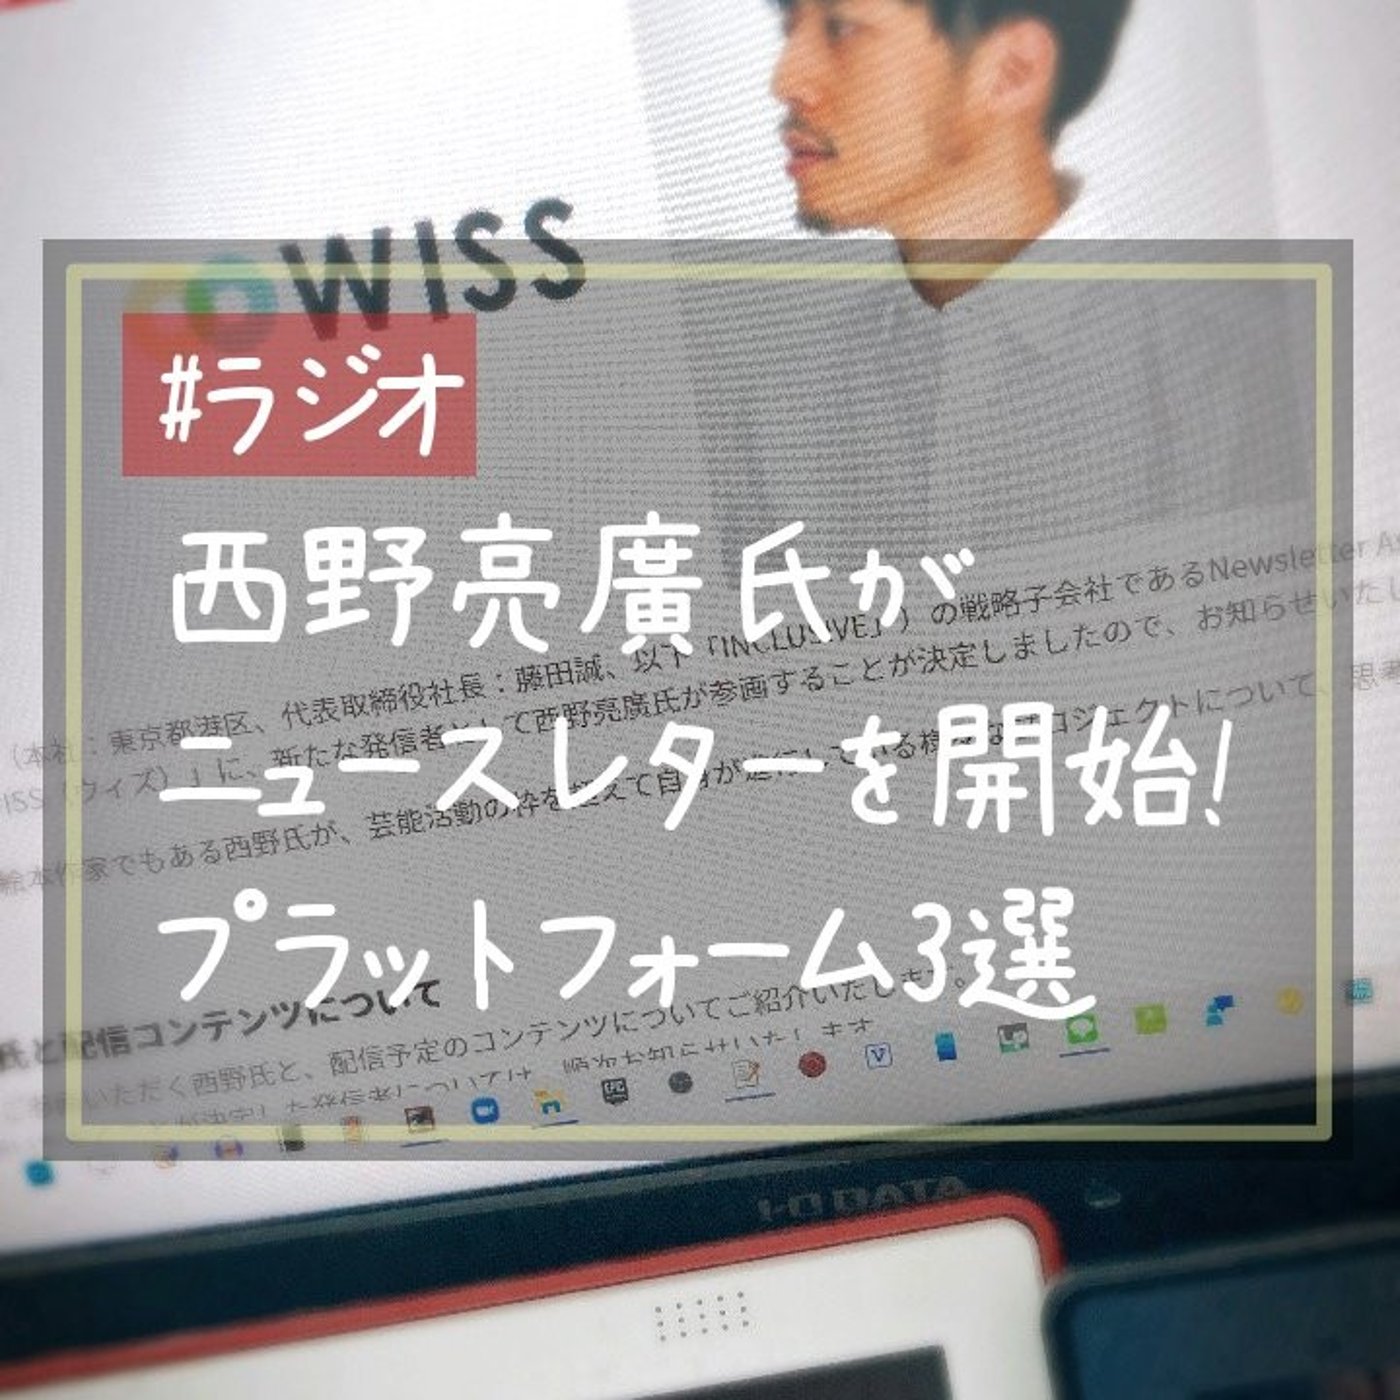 西野亮廣氏がニュースレターを開始、日本でもブーム到来か！？プラットフォーム3選